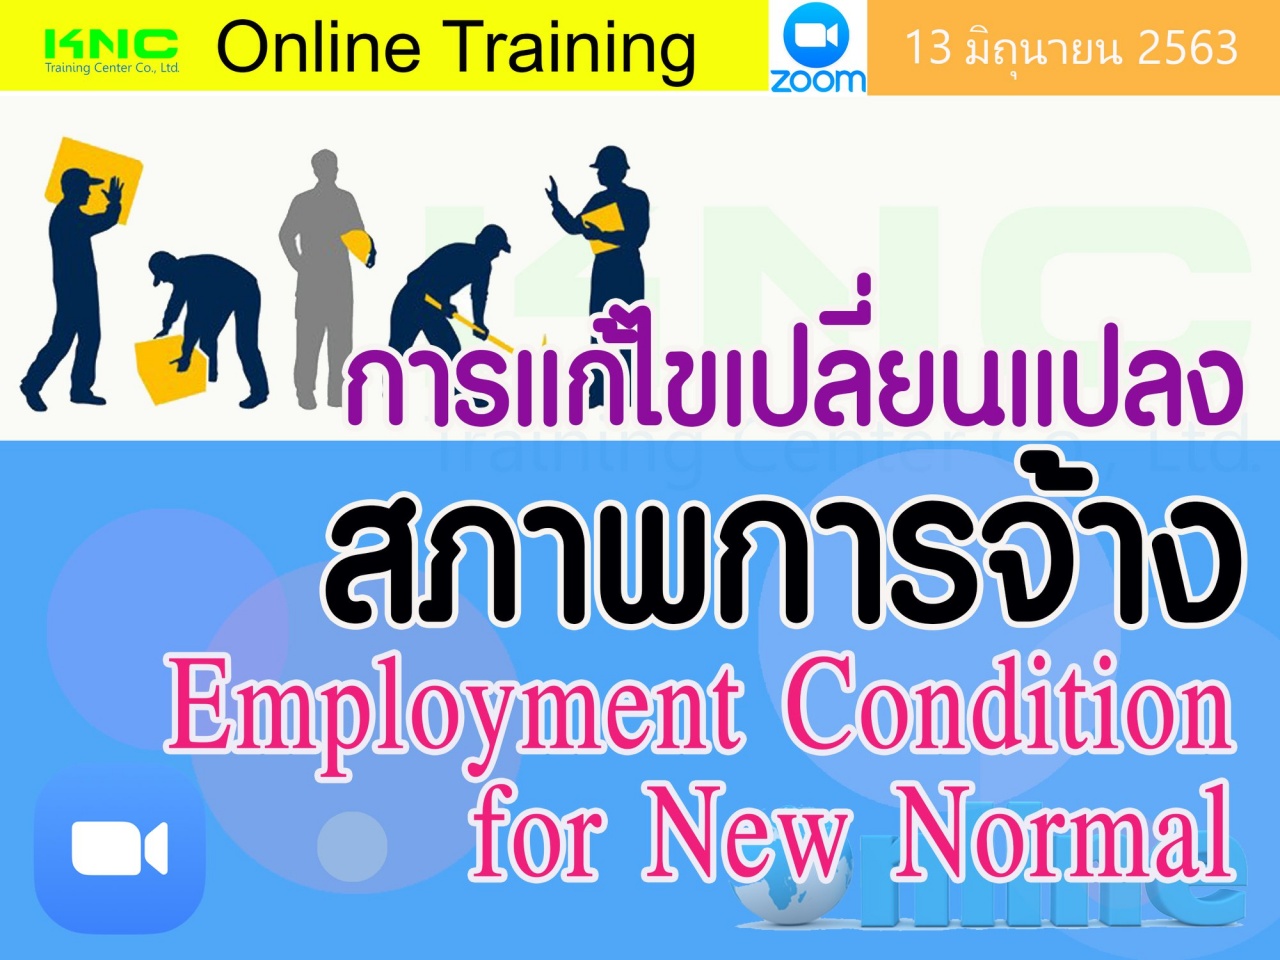 สัมมนา Online : การแก้ไขเปลี่ยนแปลงสภาพการจ้าง (Employment Condition for New Normal)